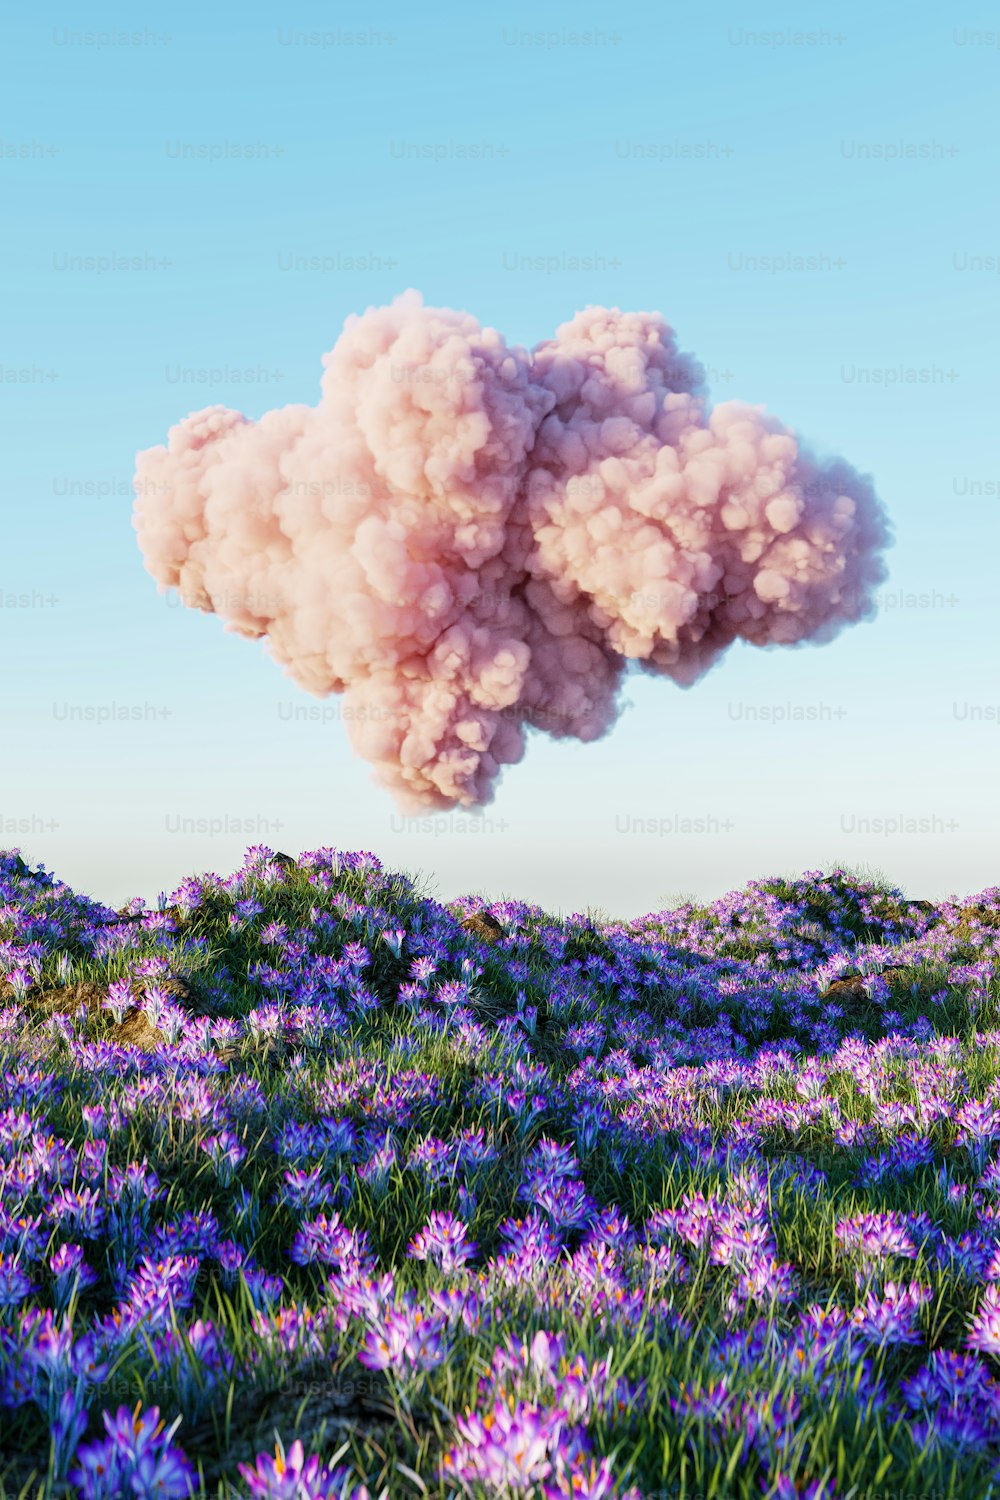 Un nuage de fumée flotte au-dessus d’un champ de fleurs violettes